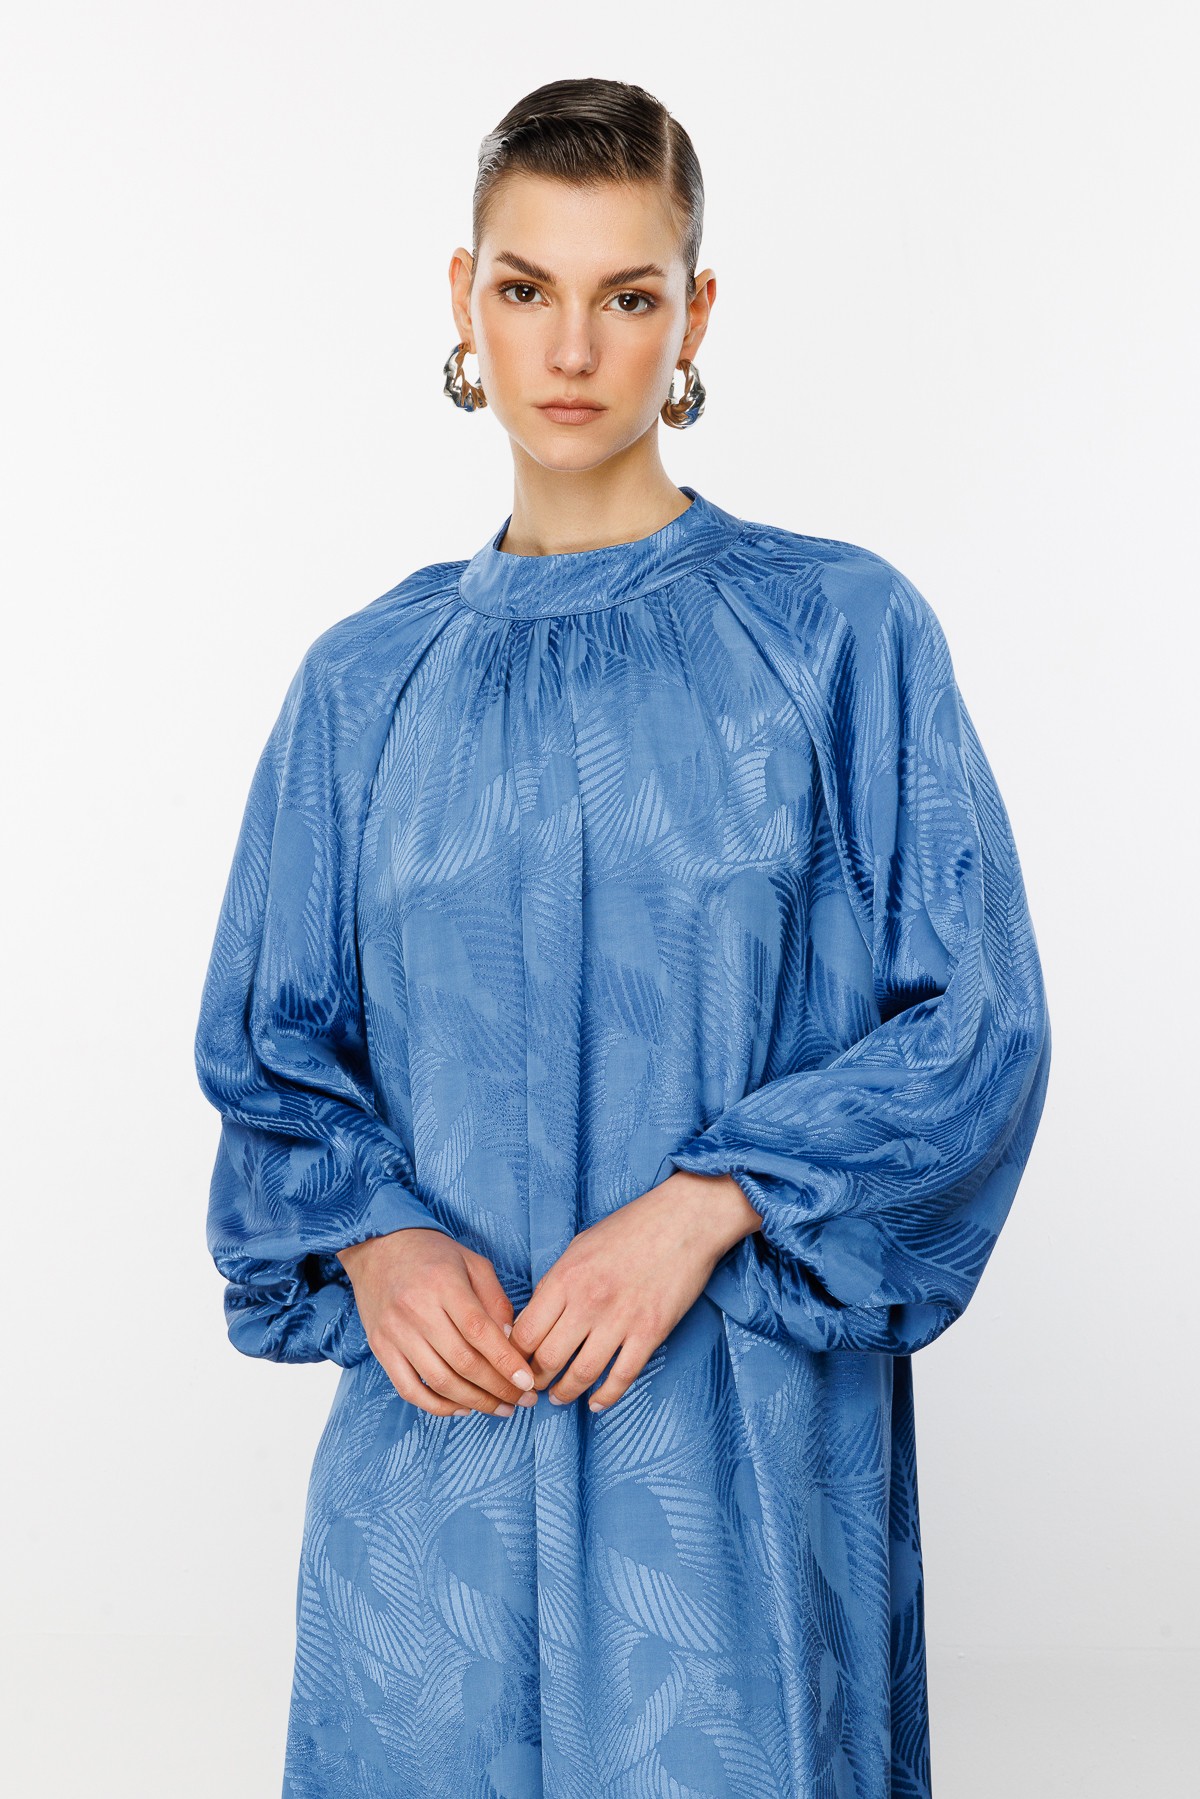 Jakarlı Balon Kol Elbise - Mavi